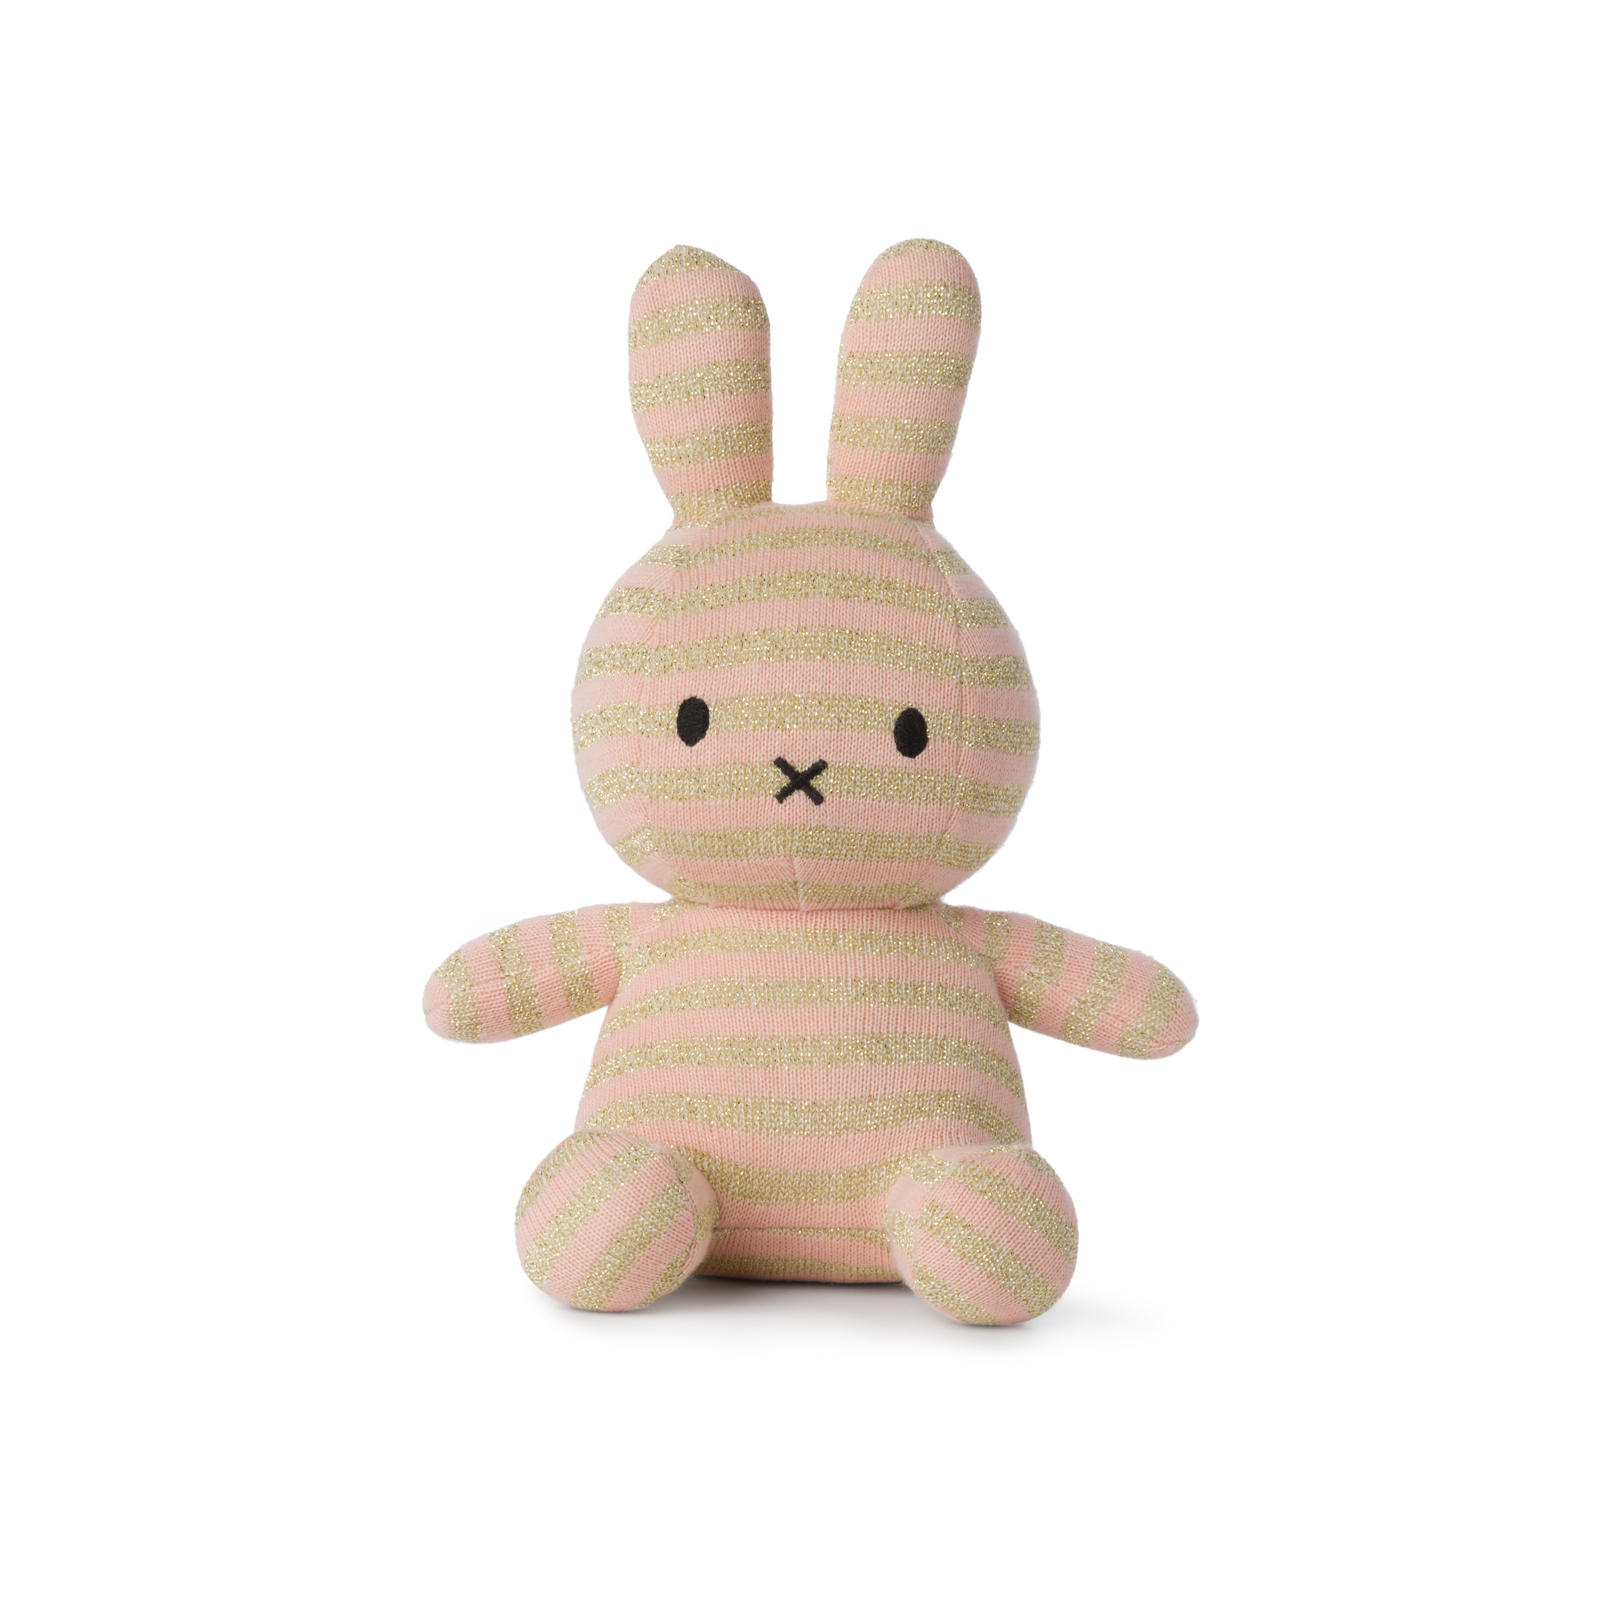 【BON TON TOYS】 Miffy(ミッフィー) Organic Cotton(オーガニックコットン) 23cm 6color